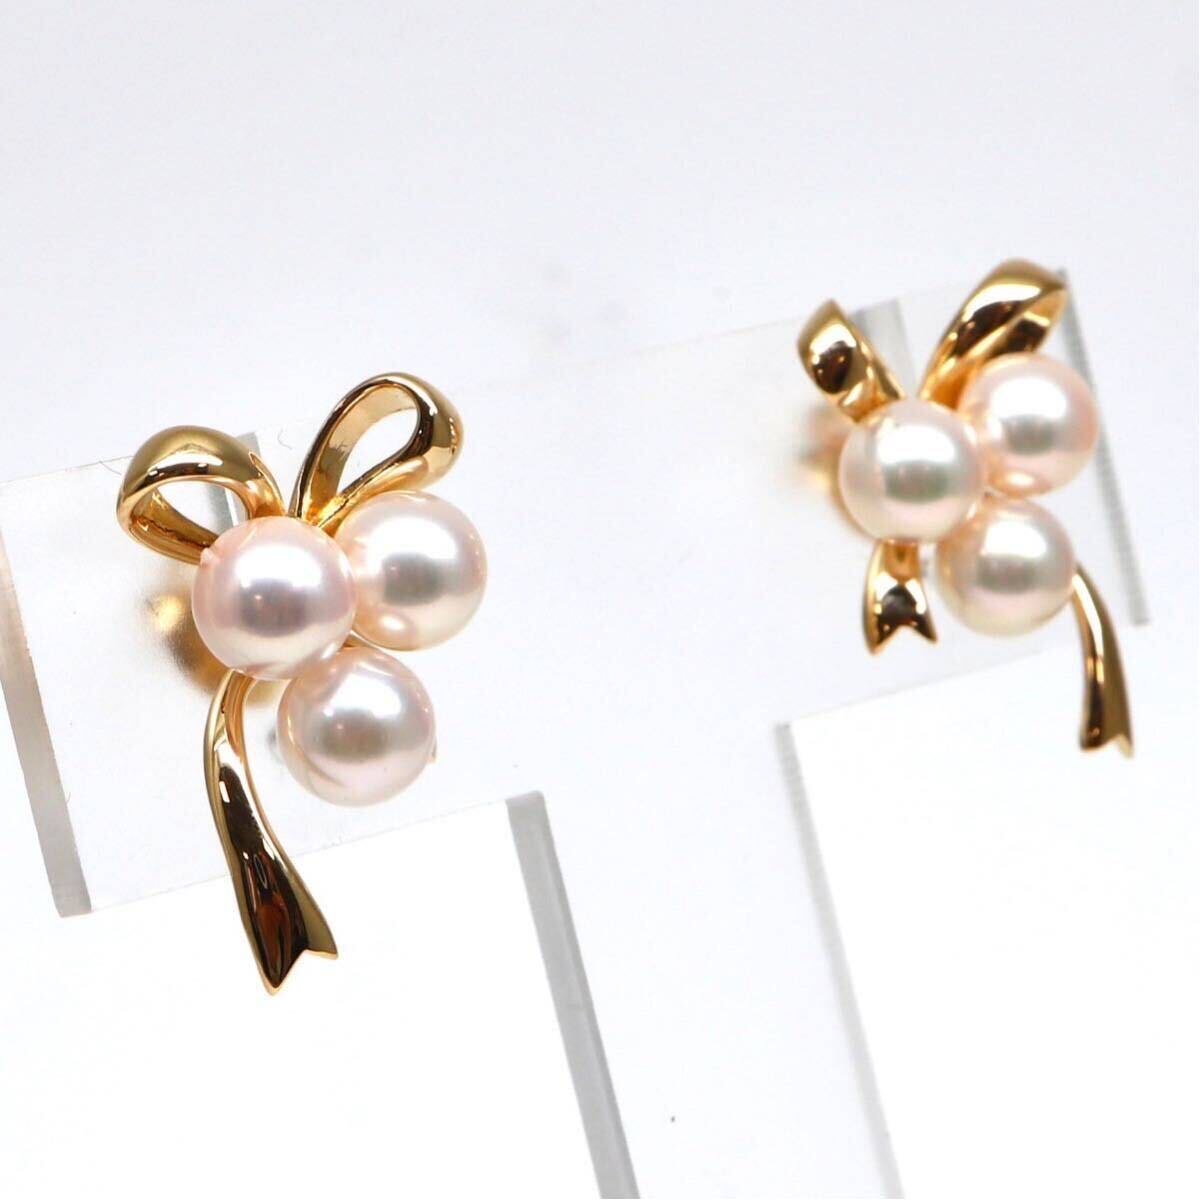 MIKIMOTO(ミキモト)高品質!!◆K18 アコヤ本真珠イヤリング◆A約4.6g パール pearl ジュエリー jewelry earring EB5/EB5の画像2